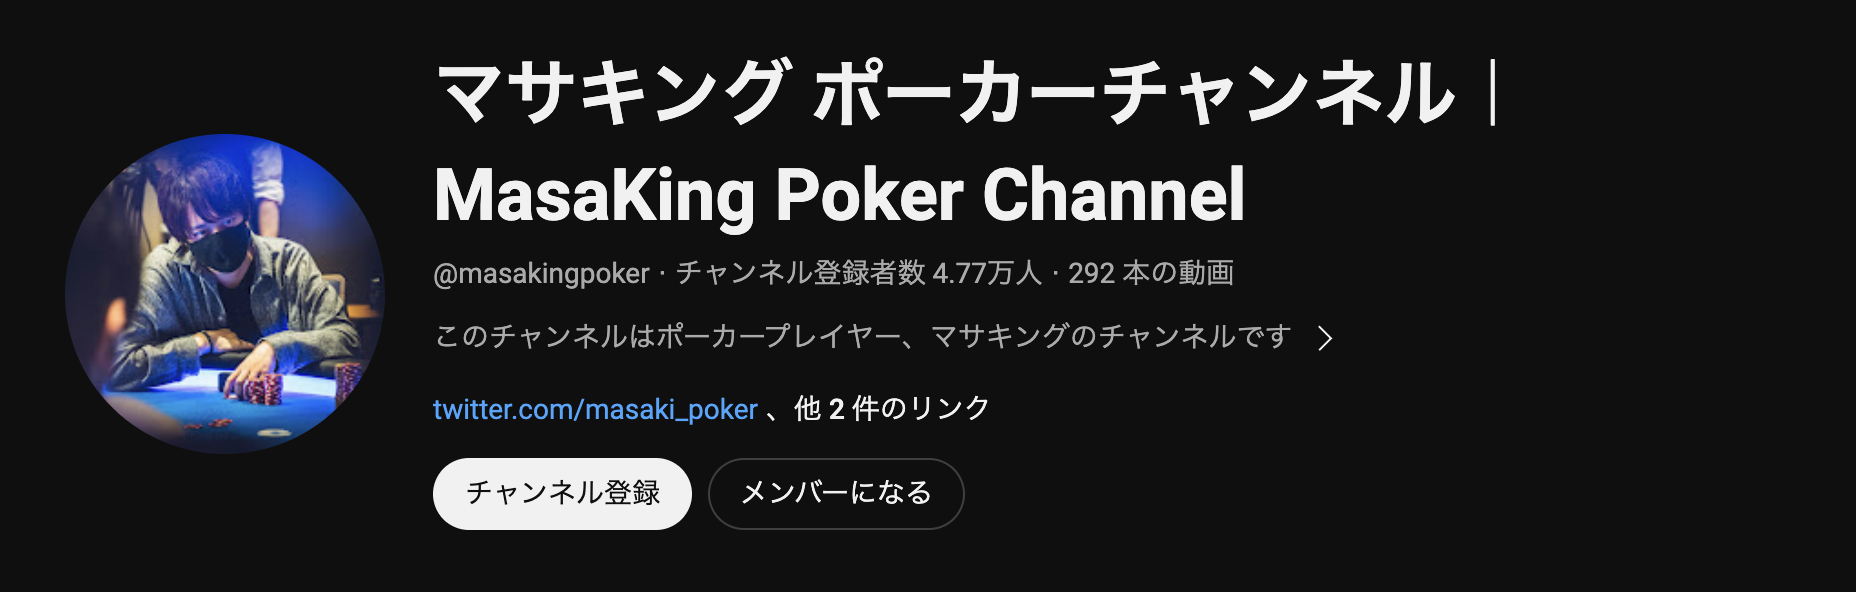 マサキング ポーカーチャンネル